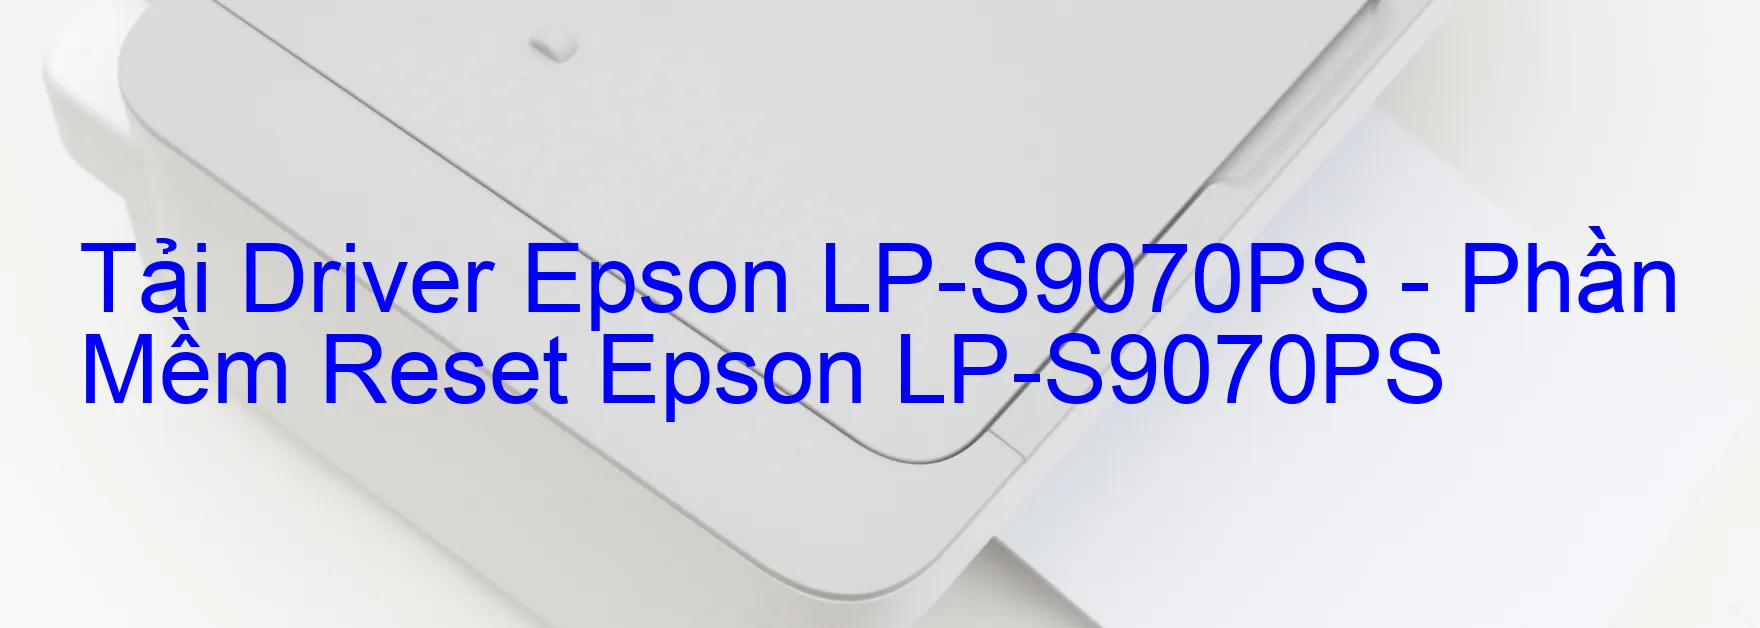 Driver Epson LP-S9070PS, Phần Mềm Reset Epson LP-S9070PS